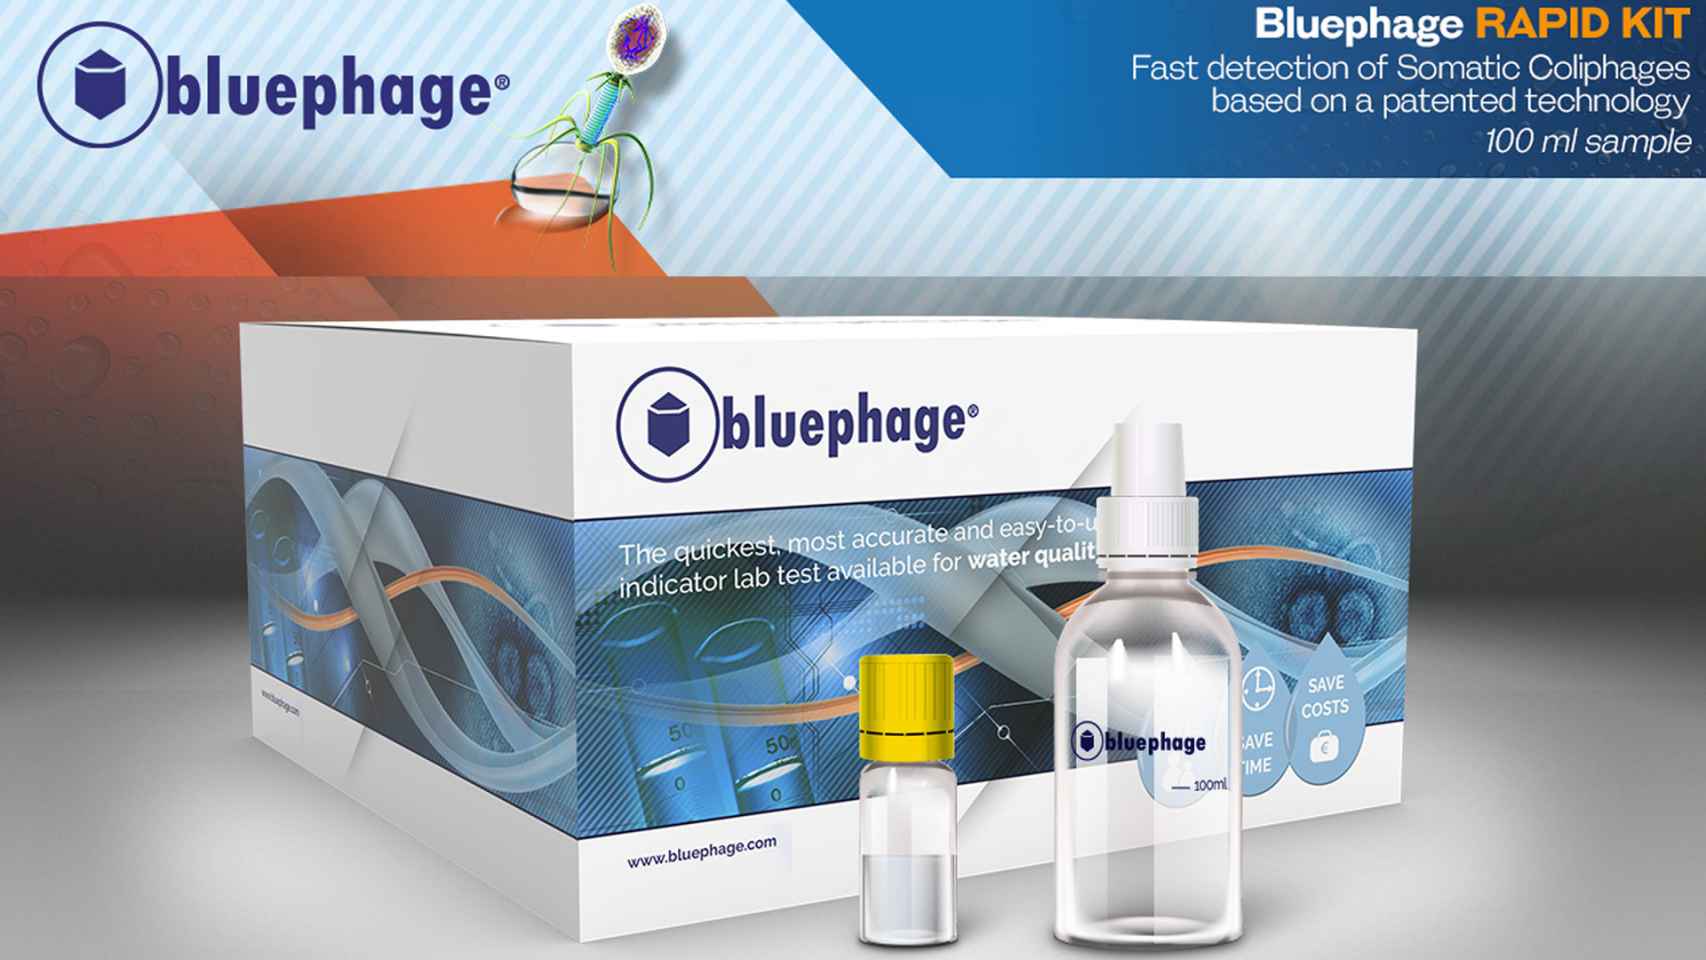 Vista general de uno de los kits de Bluephage que certifica la salubridad del agua a través de un indicador vírico y arroja resultados en sólo seis horas.